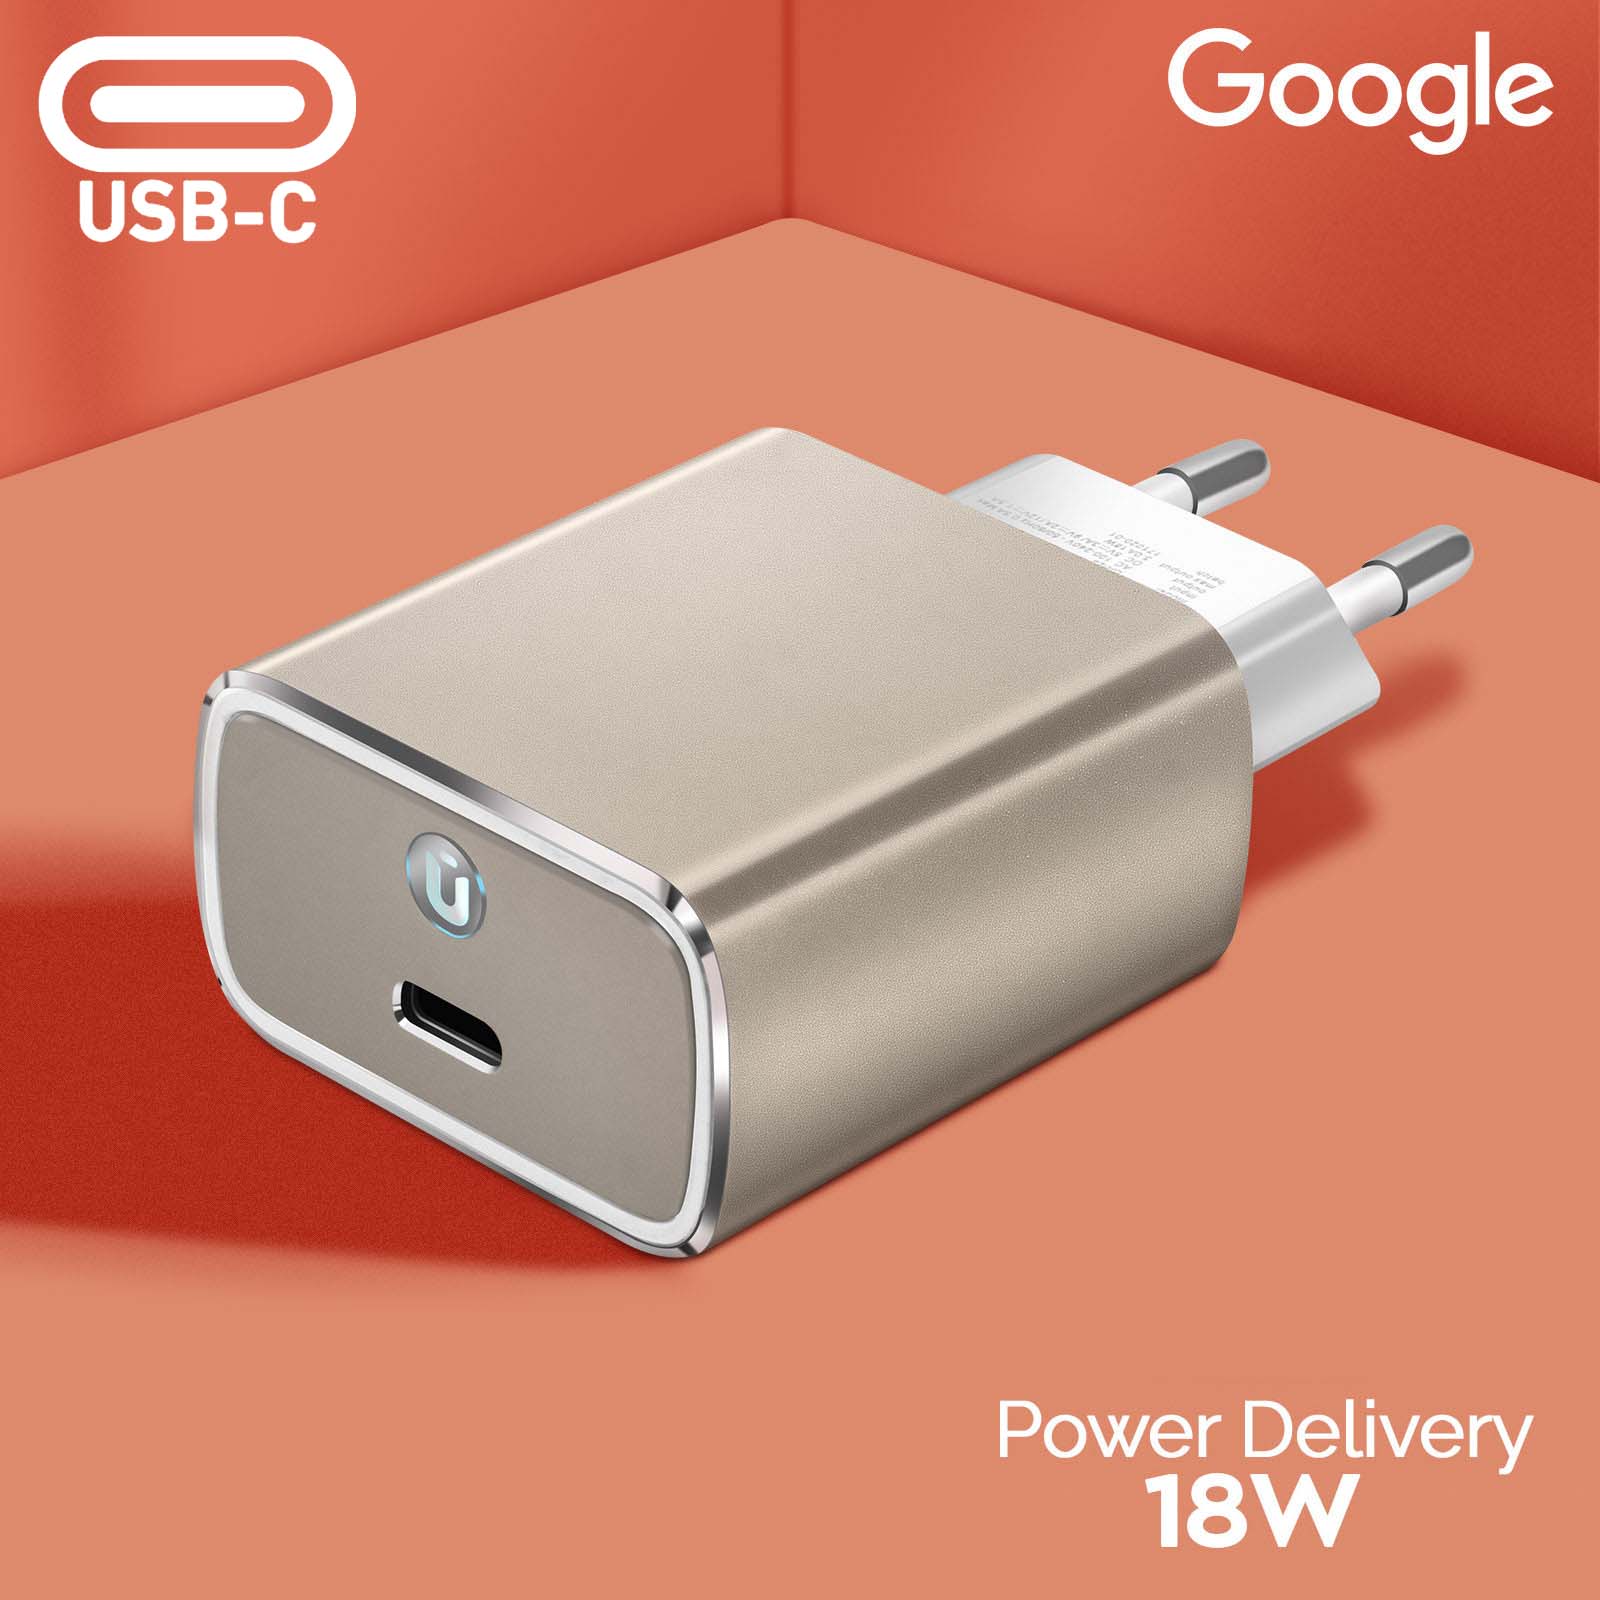 Cargador Google Original USB-C Power Delivery 18W - Blanco